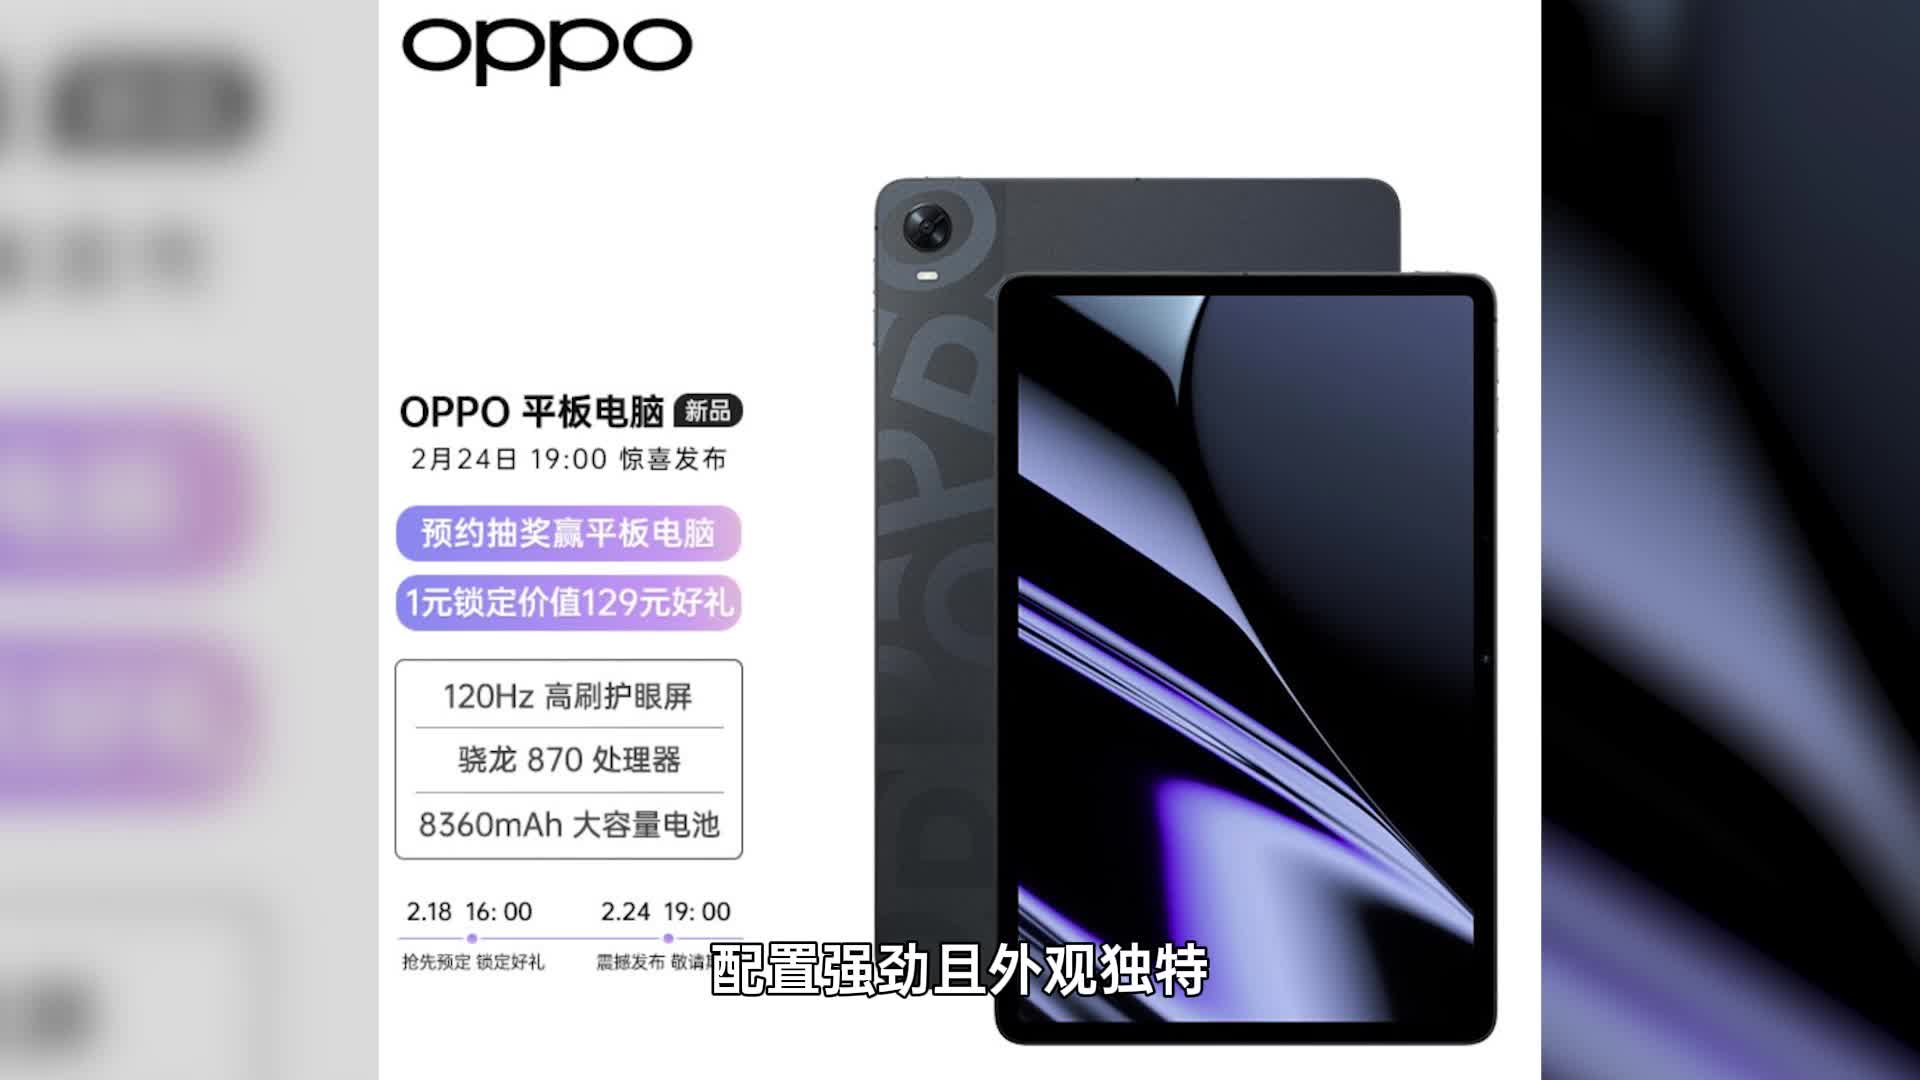 外观惊艳 性能强劲 OPPO首款平板官宣  将于2月24日发布